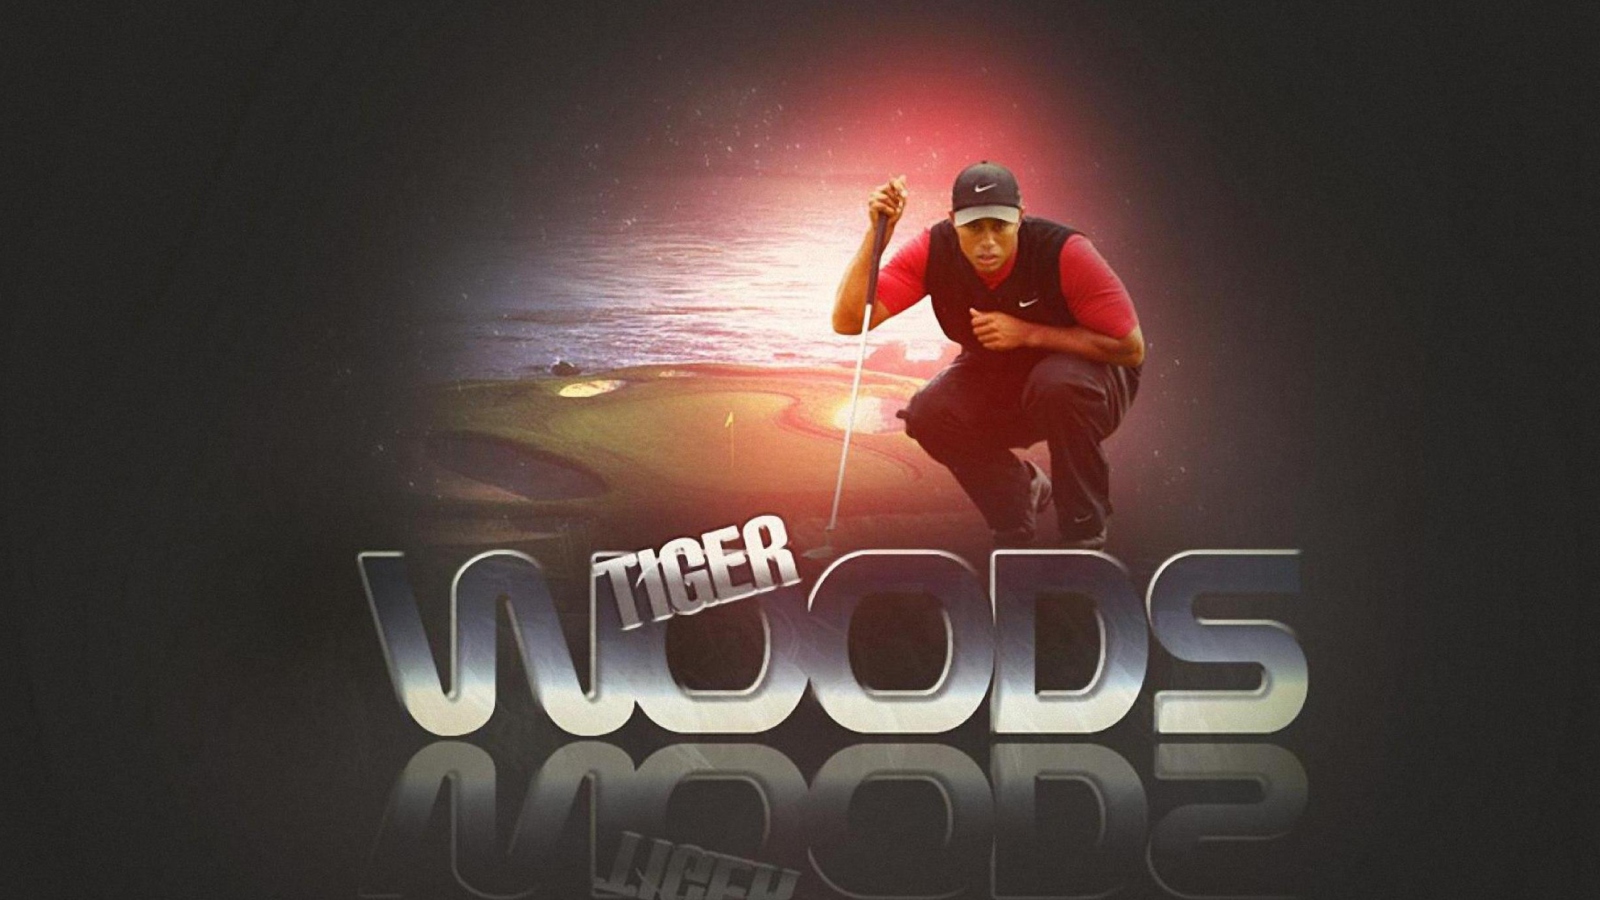 Das Tiger Woods Wallpaper 1600x900